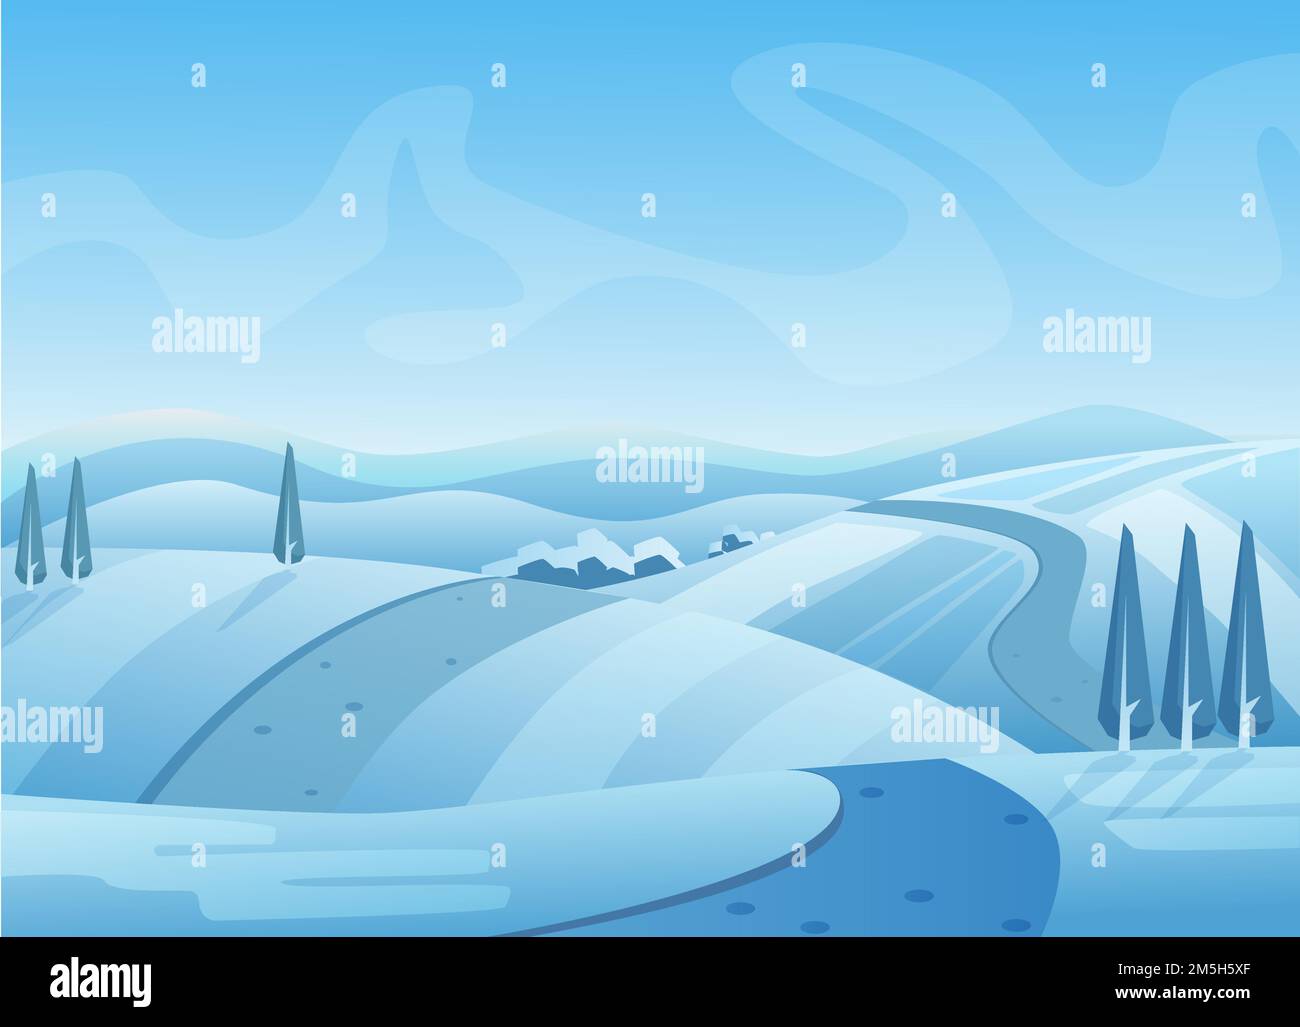 Illustrazione vettoriale del paesaggio invernale blu. Colline innevate con alberi. Strada sulla neve. Inverno, clima freddo. Area rurale sotto il cielo. Pittoresco stagionale Illustrazione Vettoriale